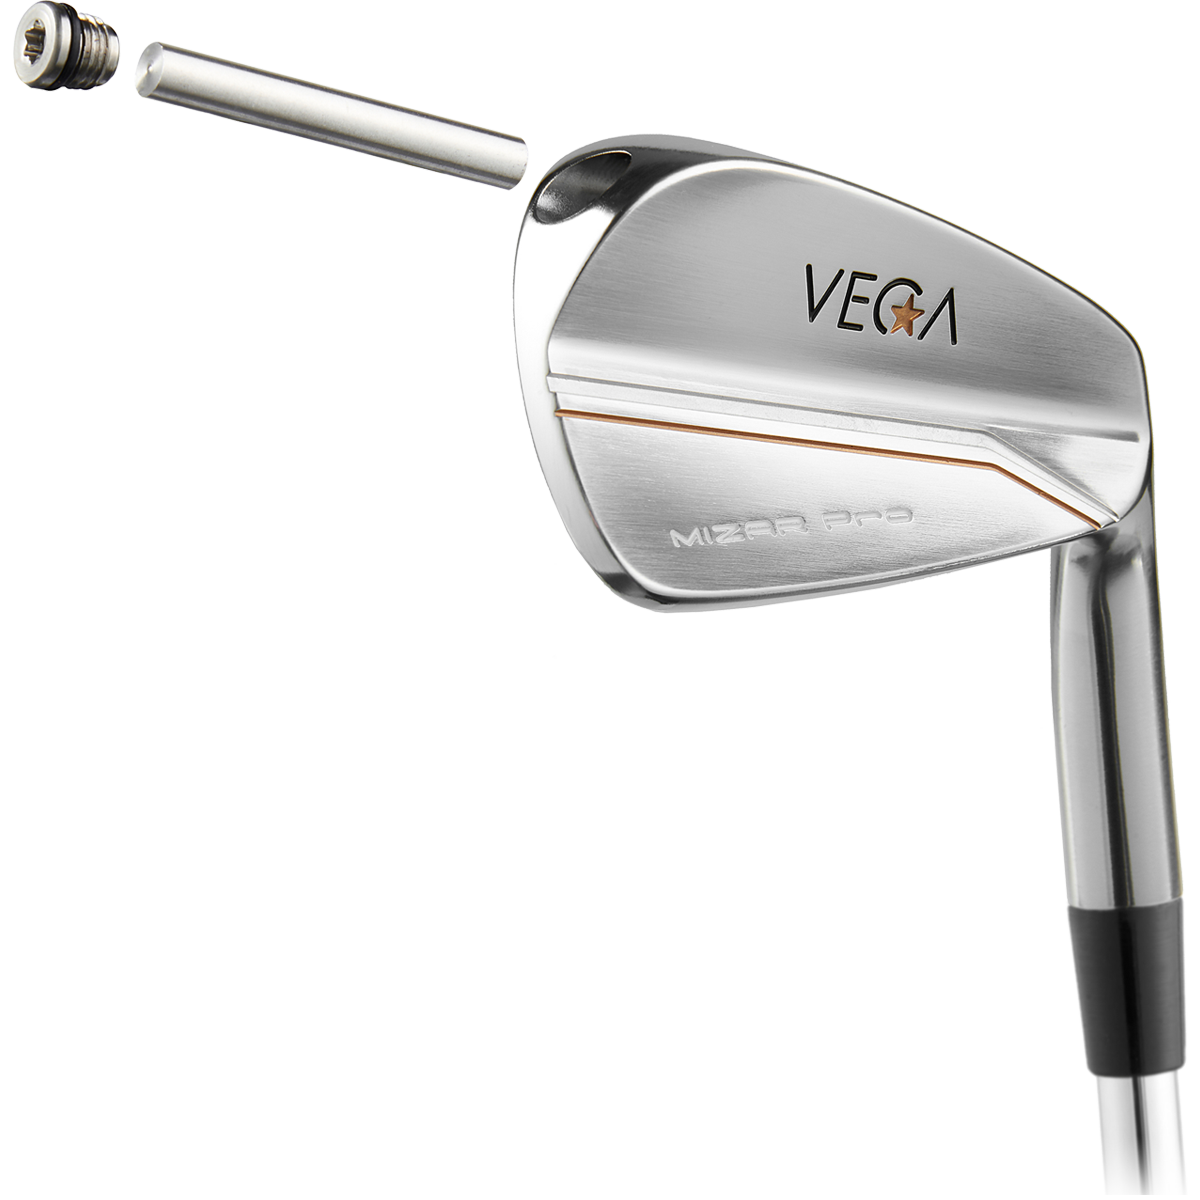 VEGA Custom Mizar Pro Irons